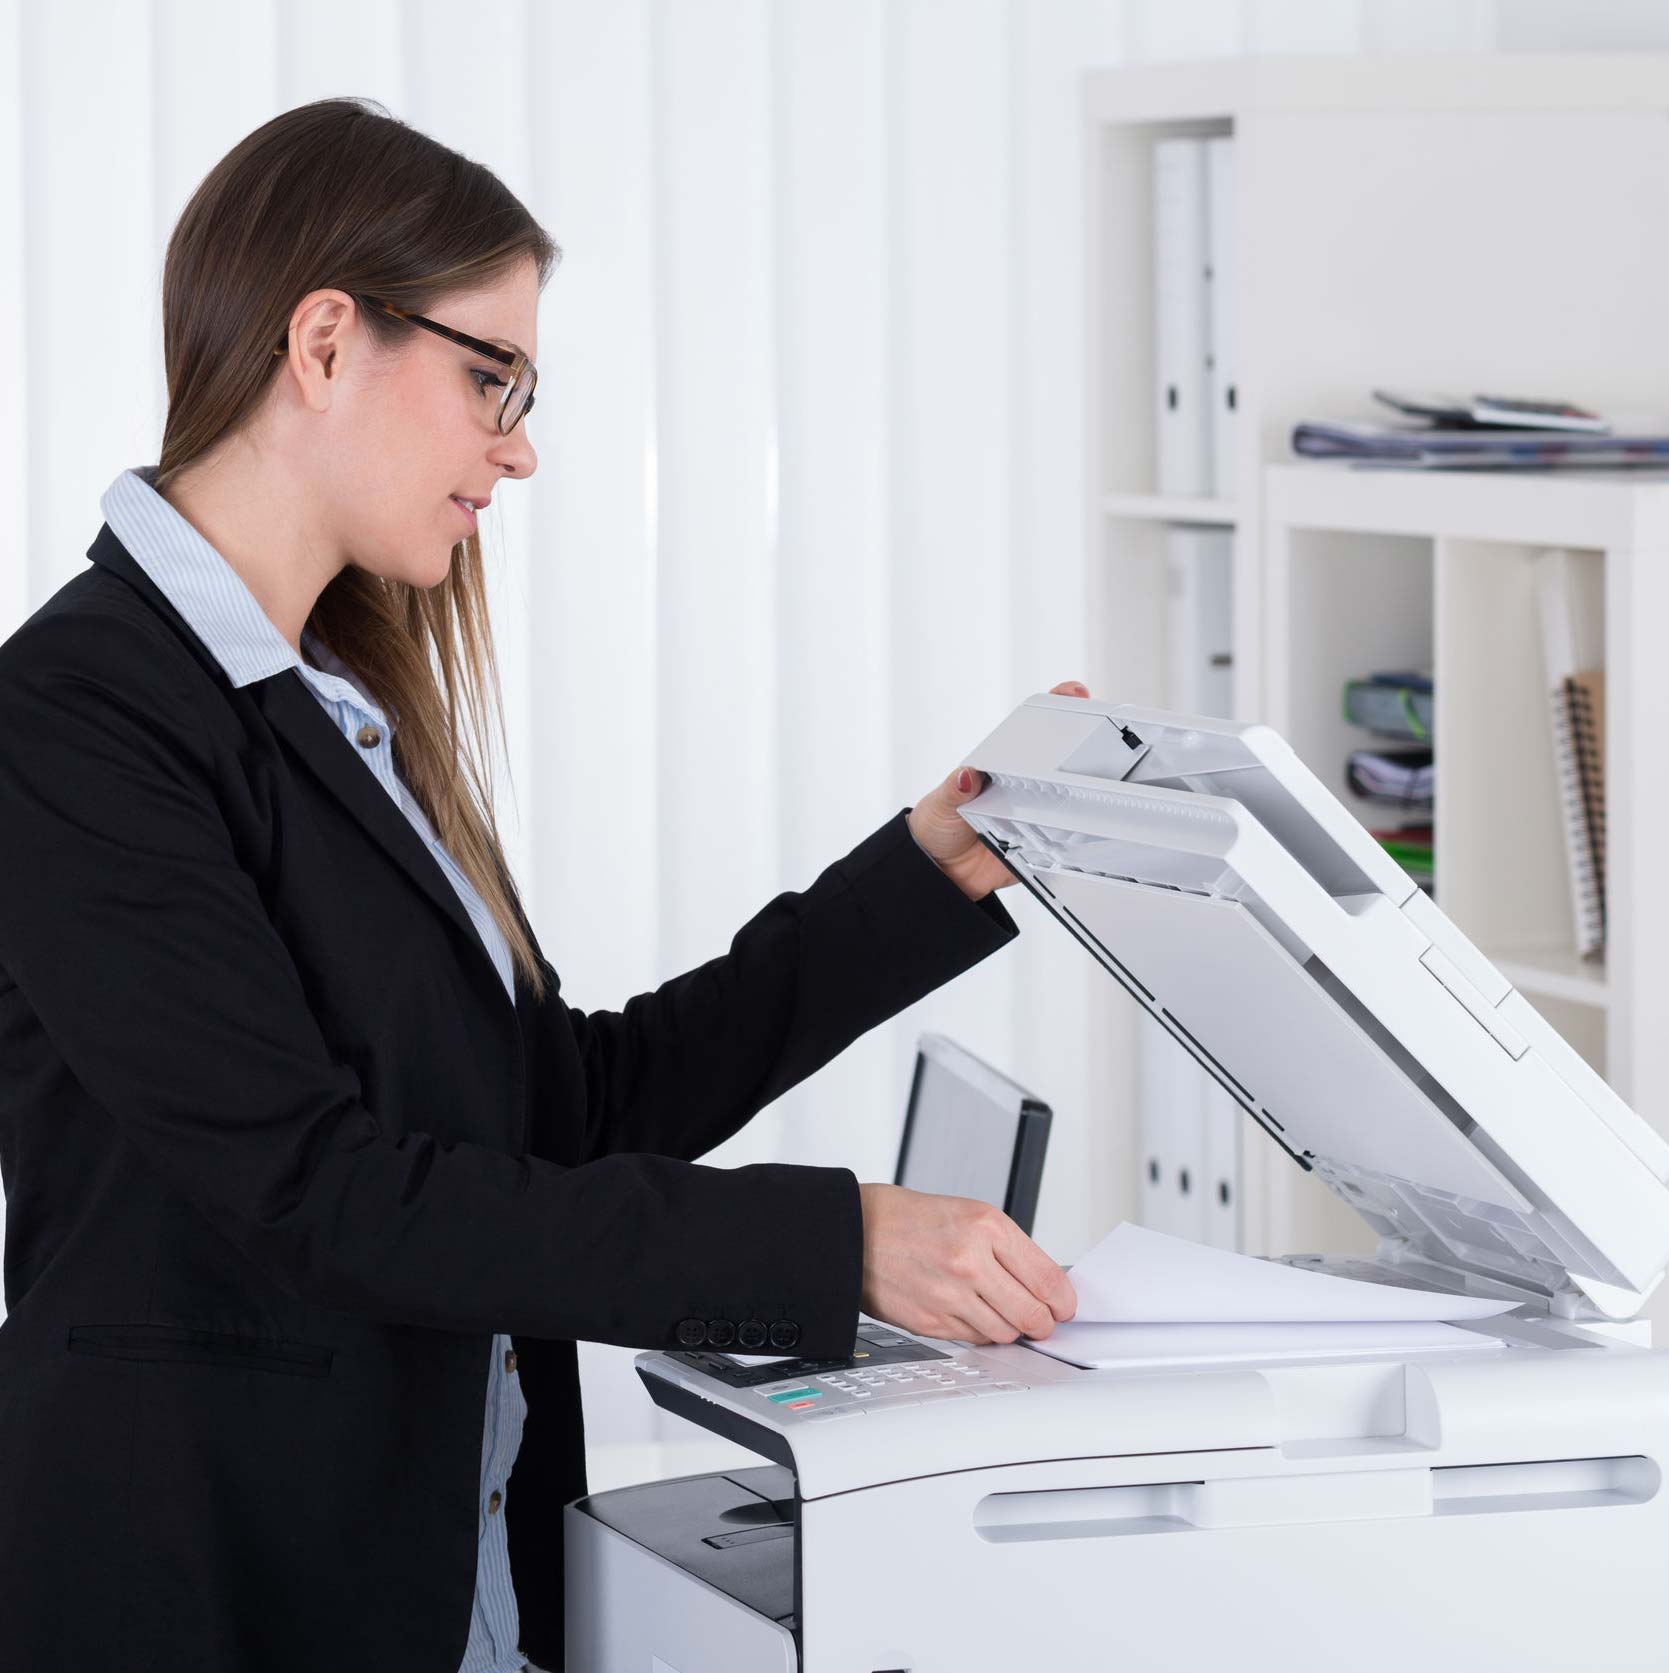 Alquiler o Renting en Zaragoza de Impresoras y fotocopiadoras